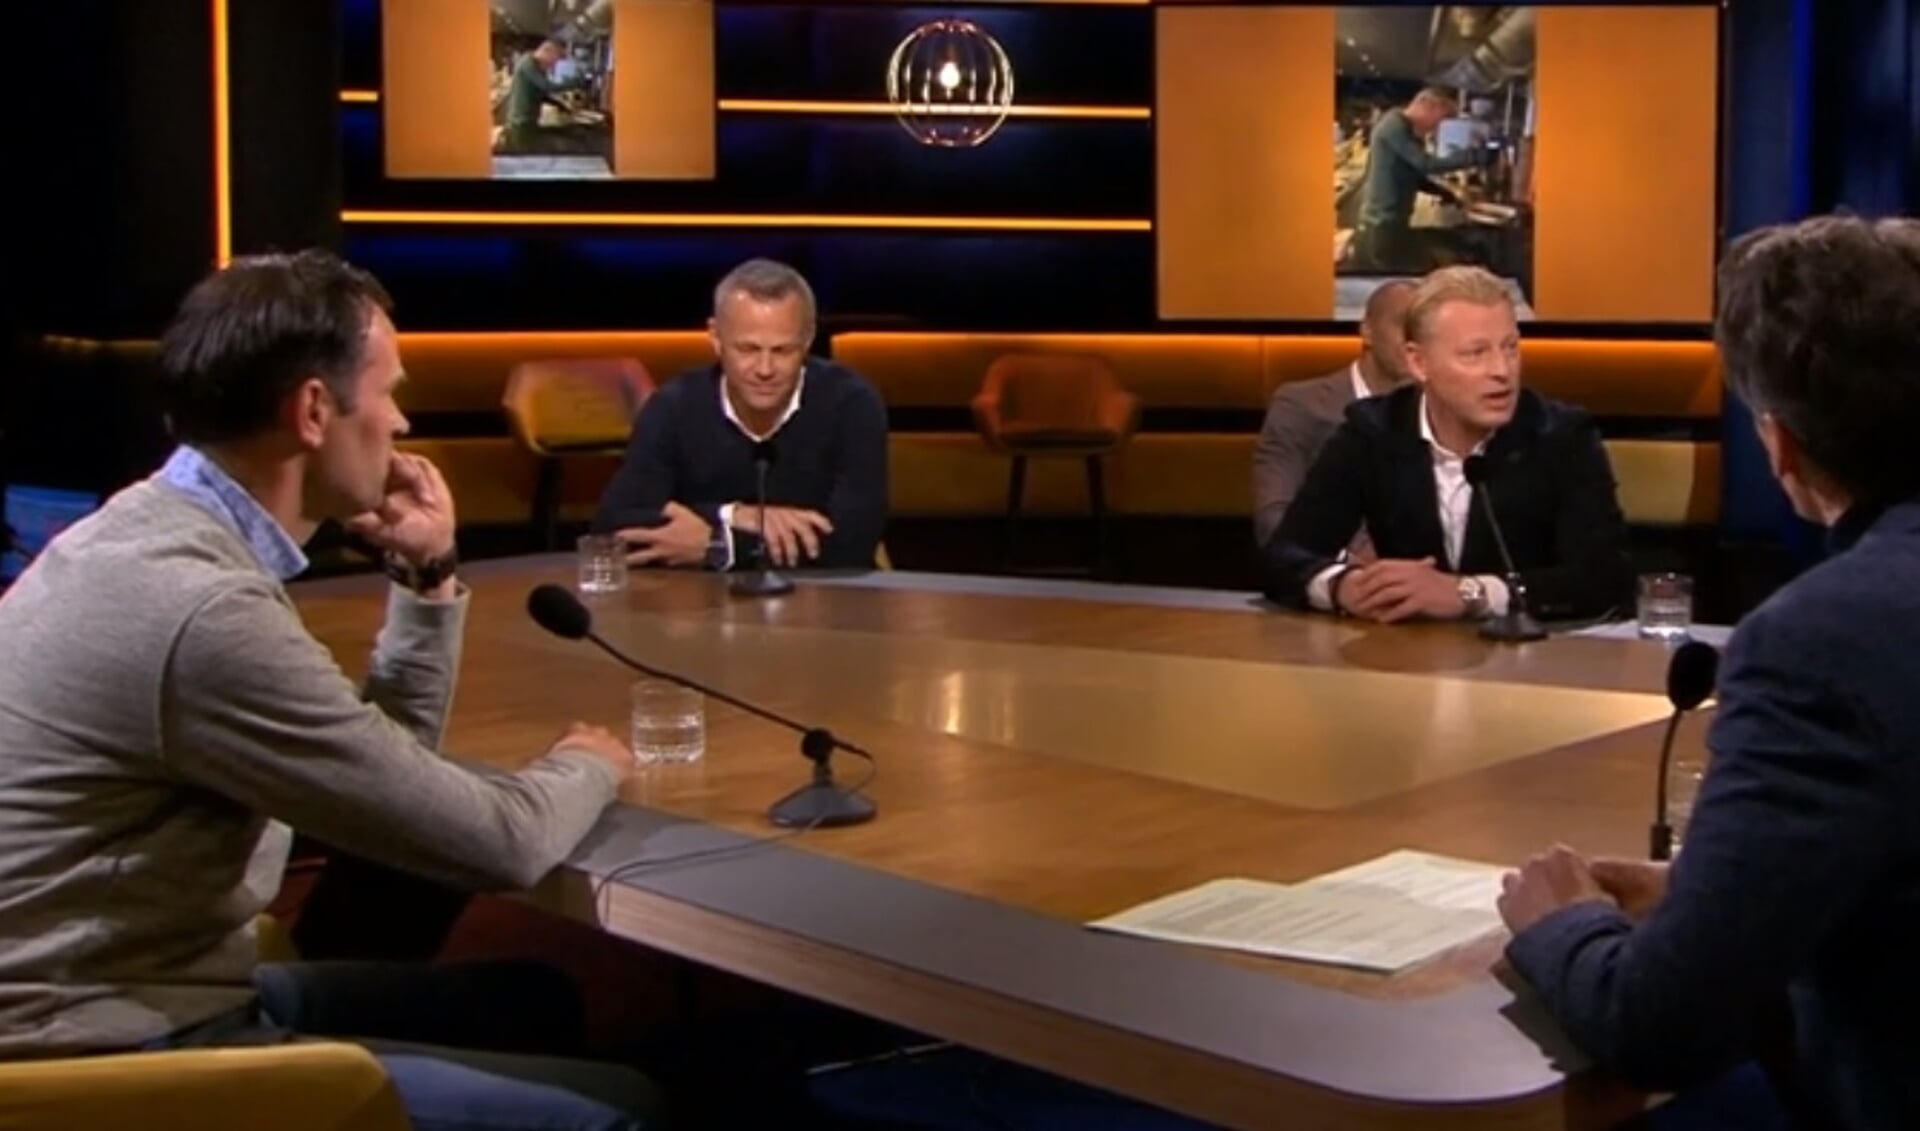 De scheidsrechters Bas Nijhuis, Björn
Kuipers en Kevin Blom waren te gast bij het praatprogramma Op1 om te vertellen over hoe zij de voetballoze
periode doorkomen.